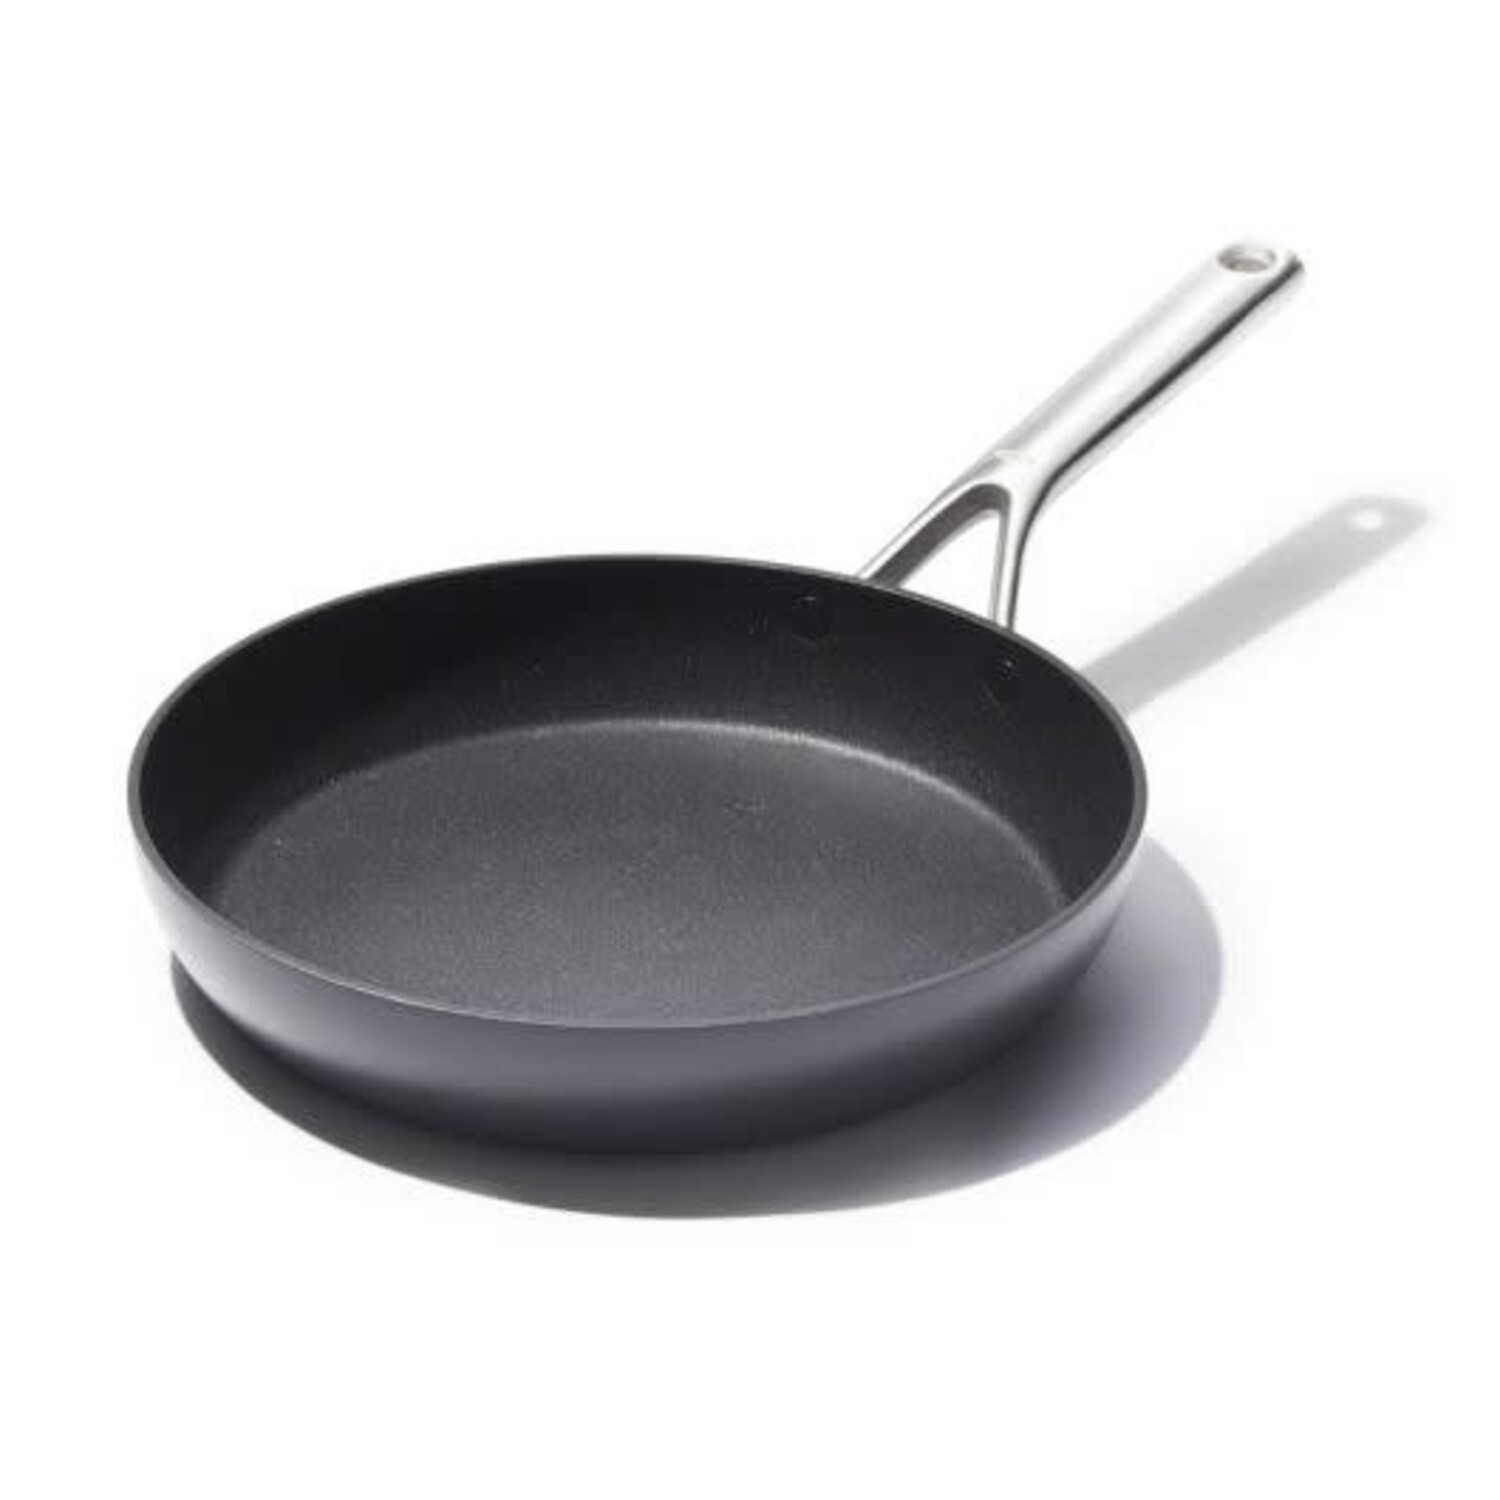 Zyliss Cookware 10 Nonstick Grill Pan